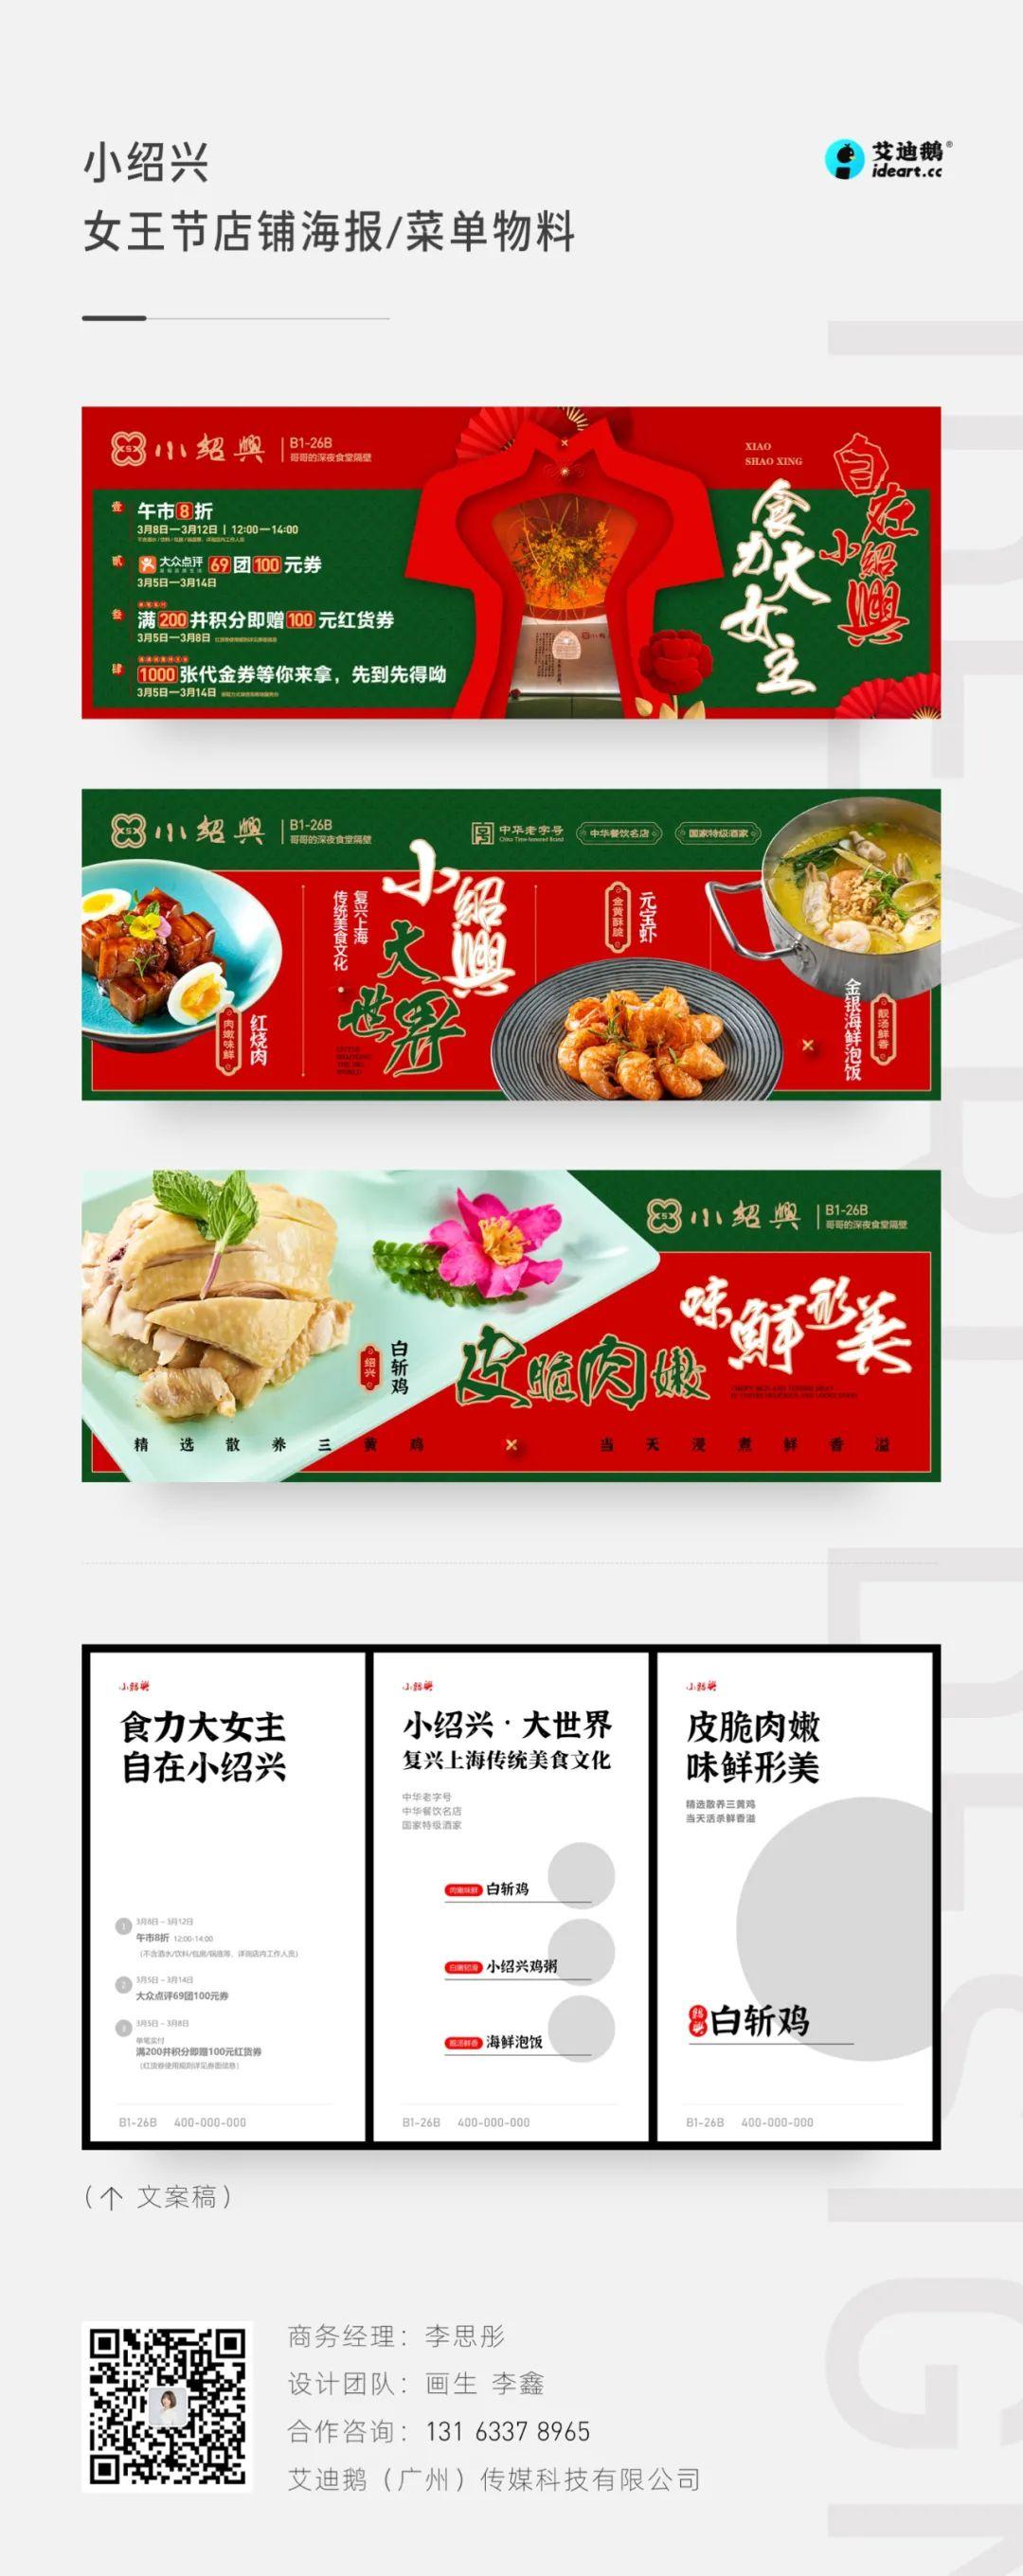 小绍兴女王节店铺海报/菜单物料